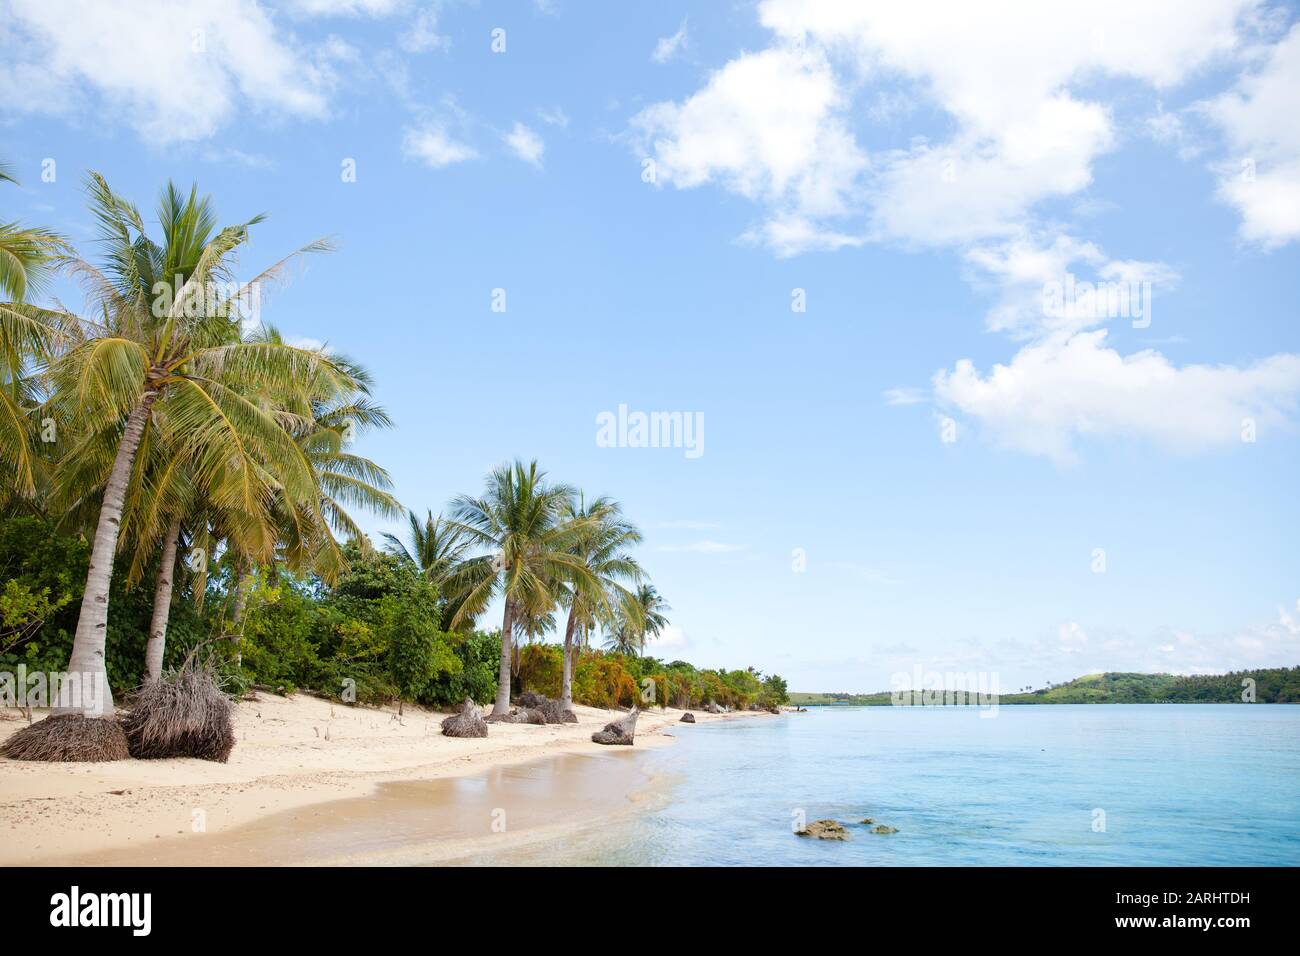 Plage de sable blanc et palmiers. Plage déserte. Îles Caramoan, Philippines. Banque D'Images